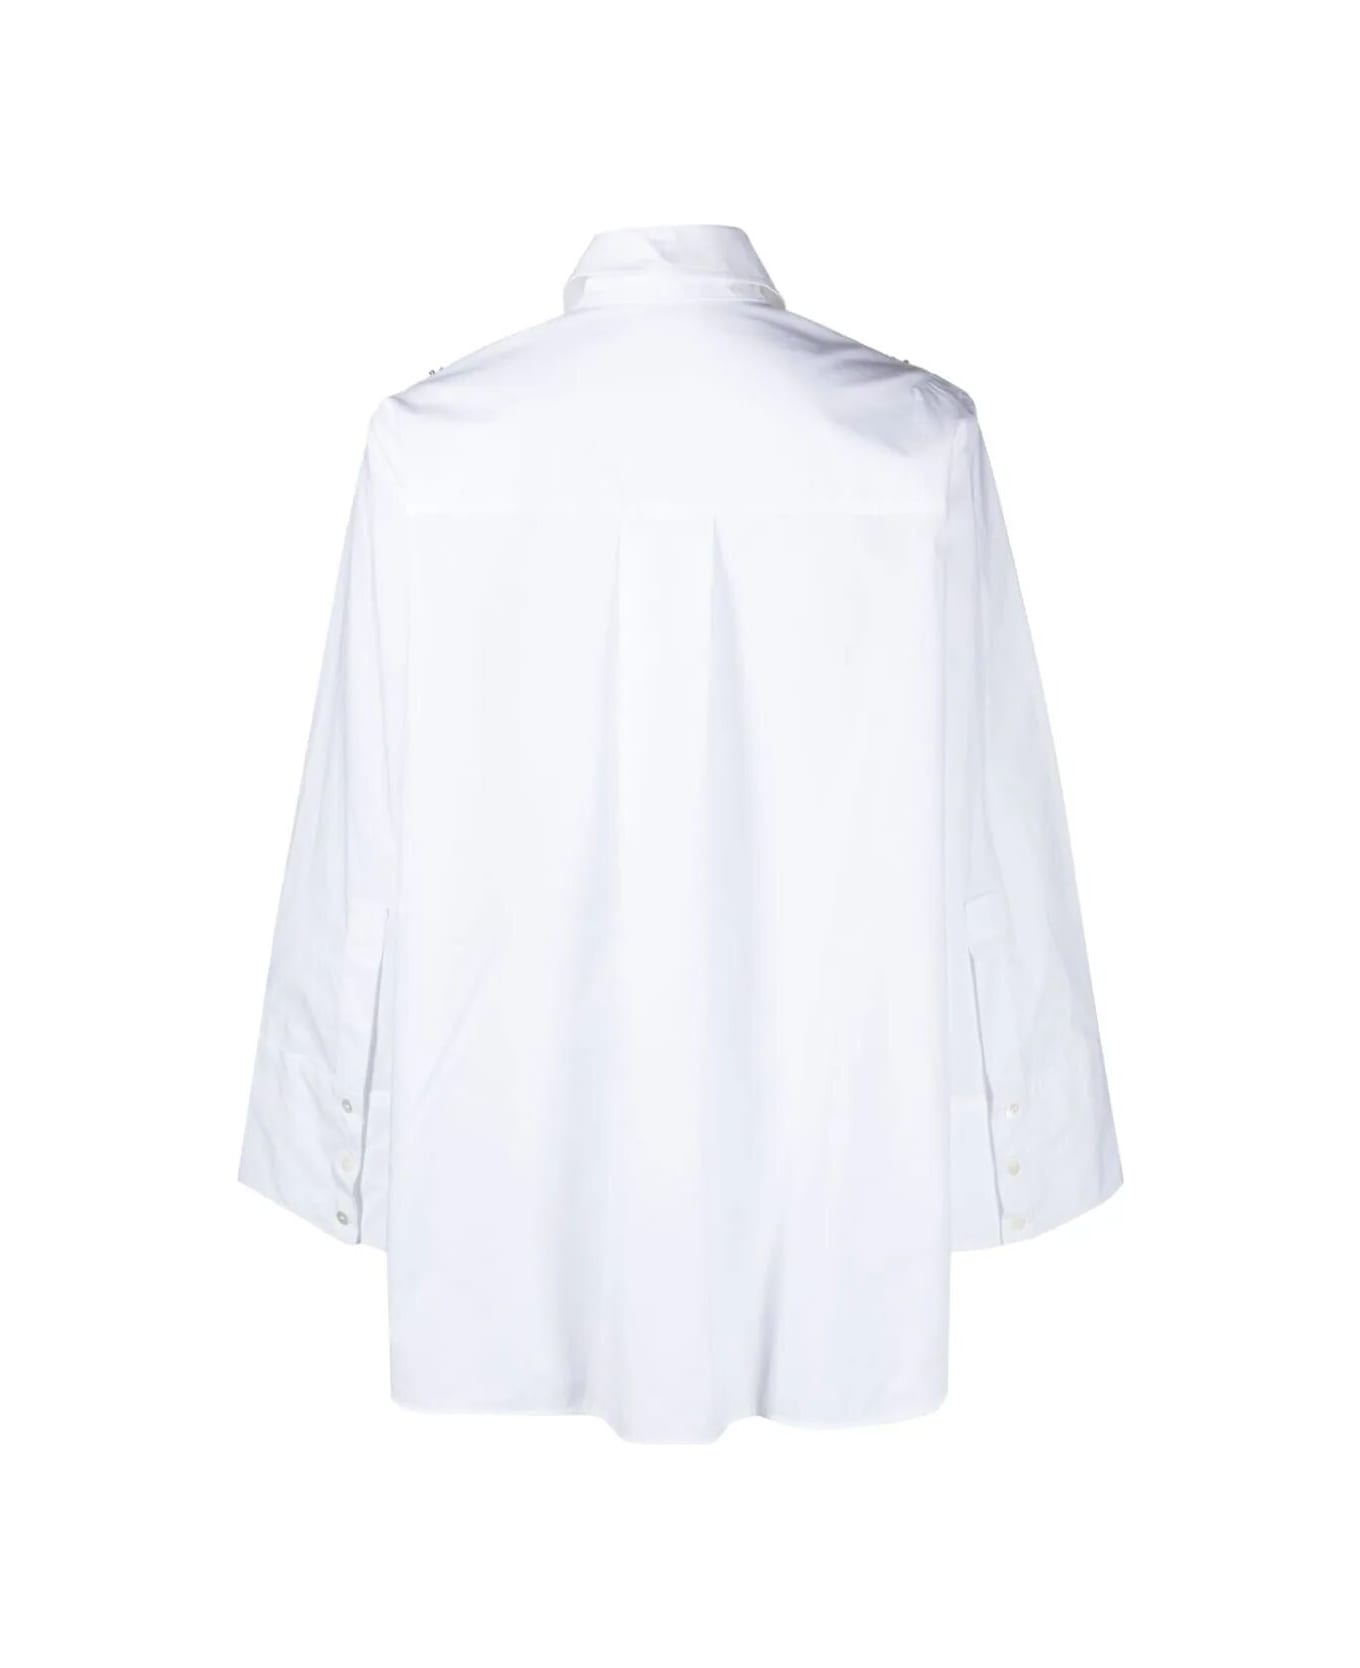 Parosh Shirt With Swarovsky - White シャツ